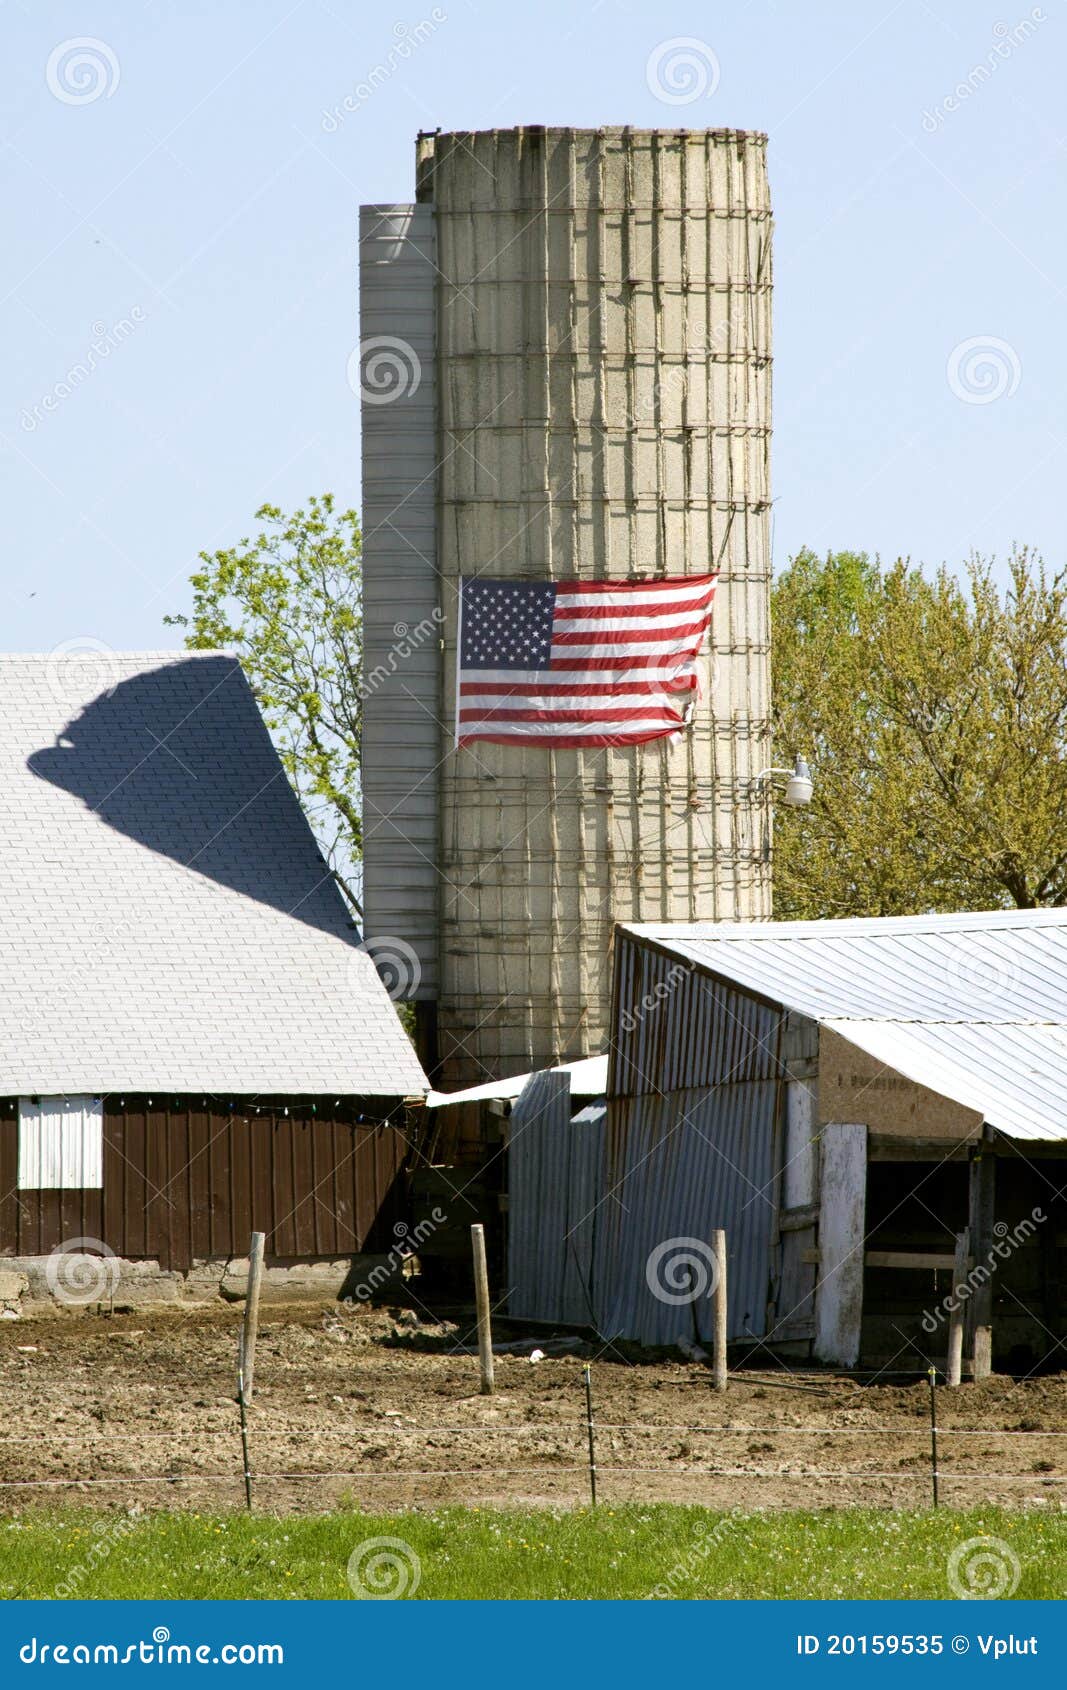 all american farm